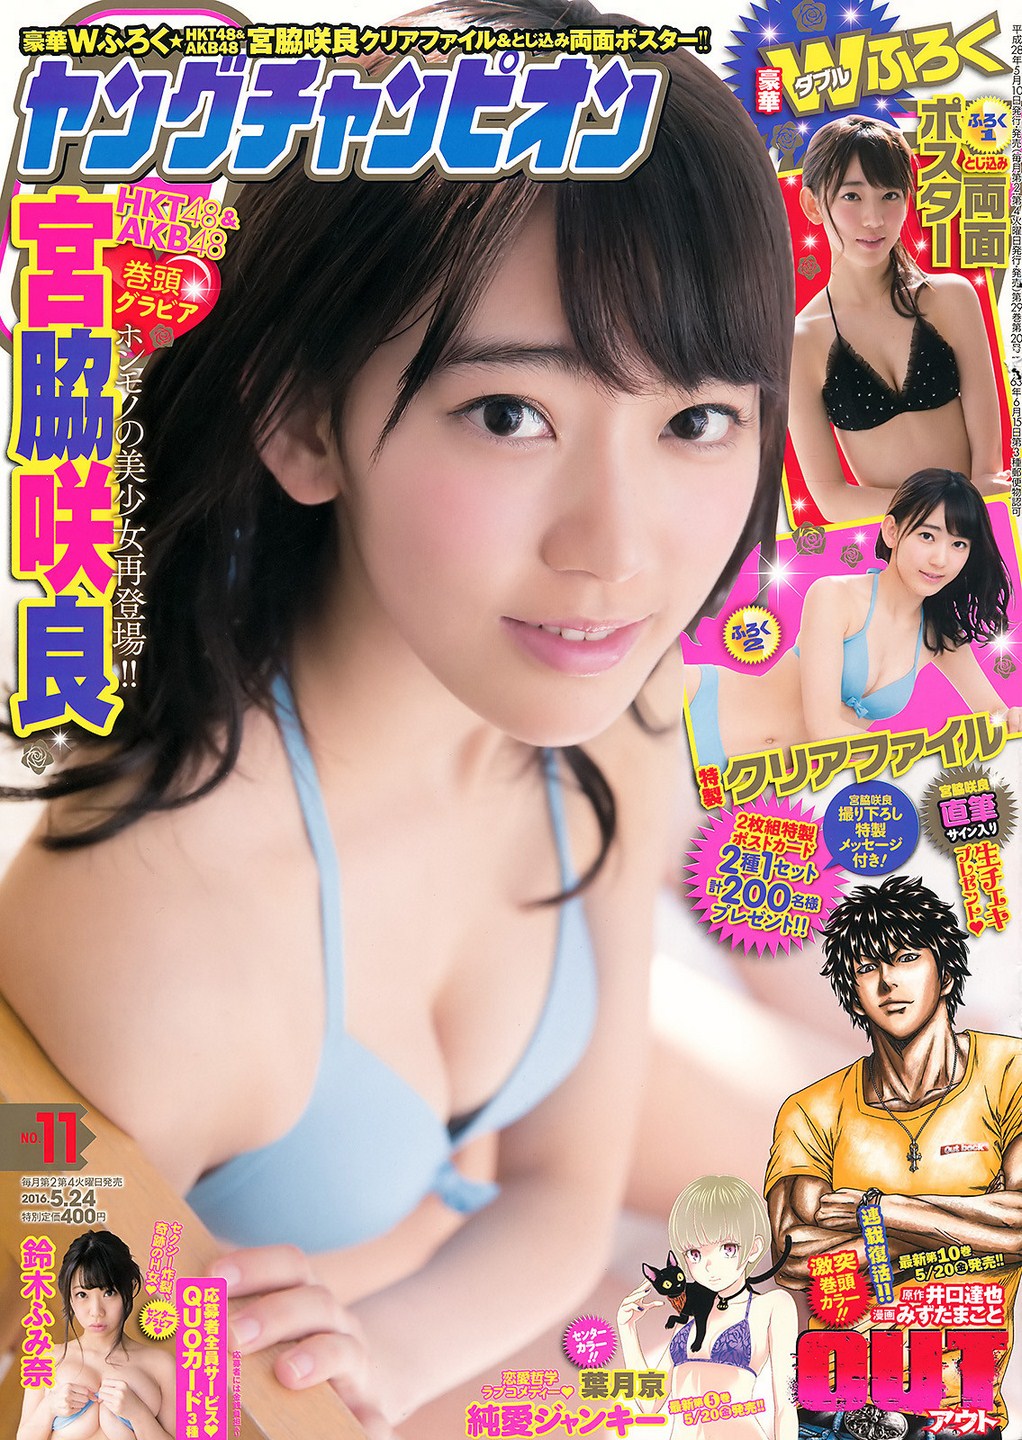 Miyawaki Sakura 宮脇咲良 HKT48, Young Champion No.11 2016 Magazine Gravure